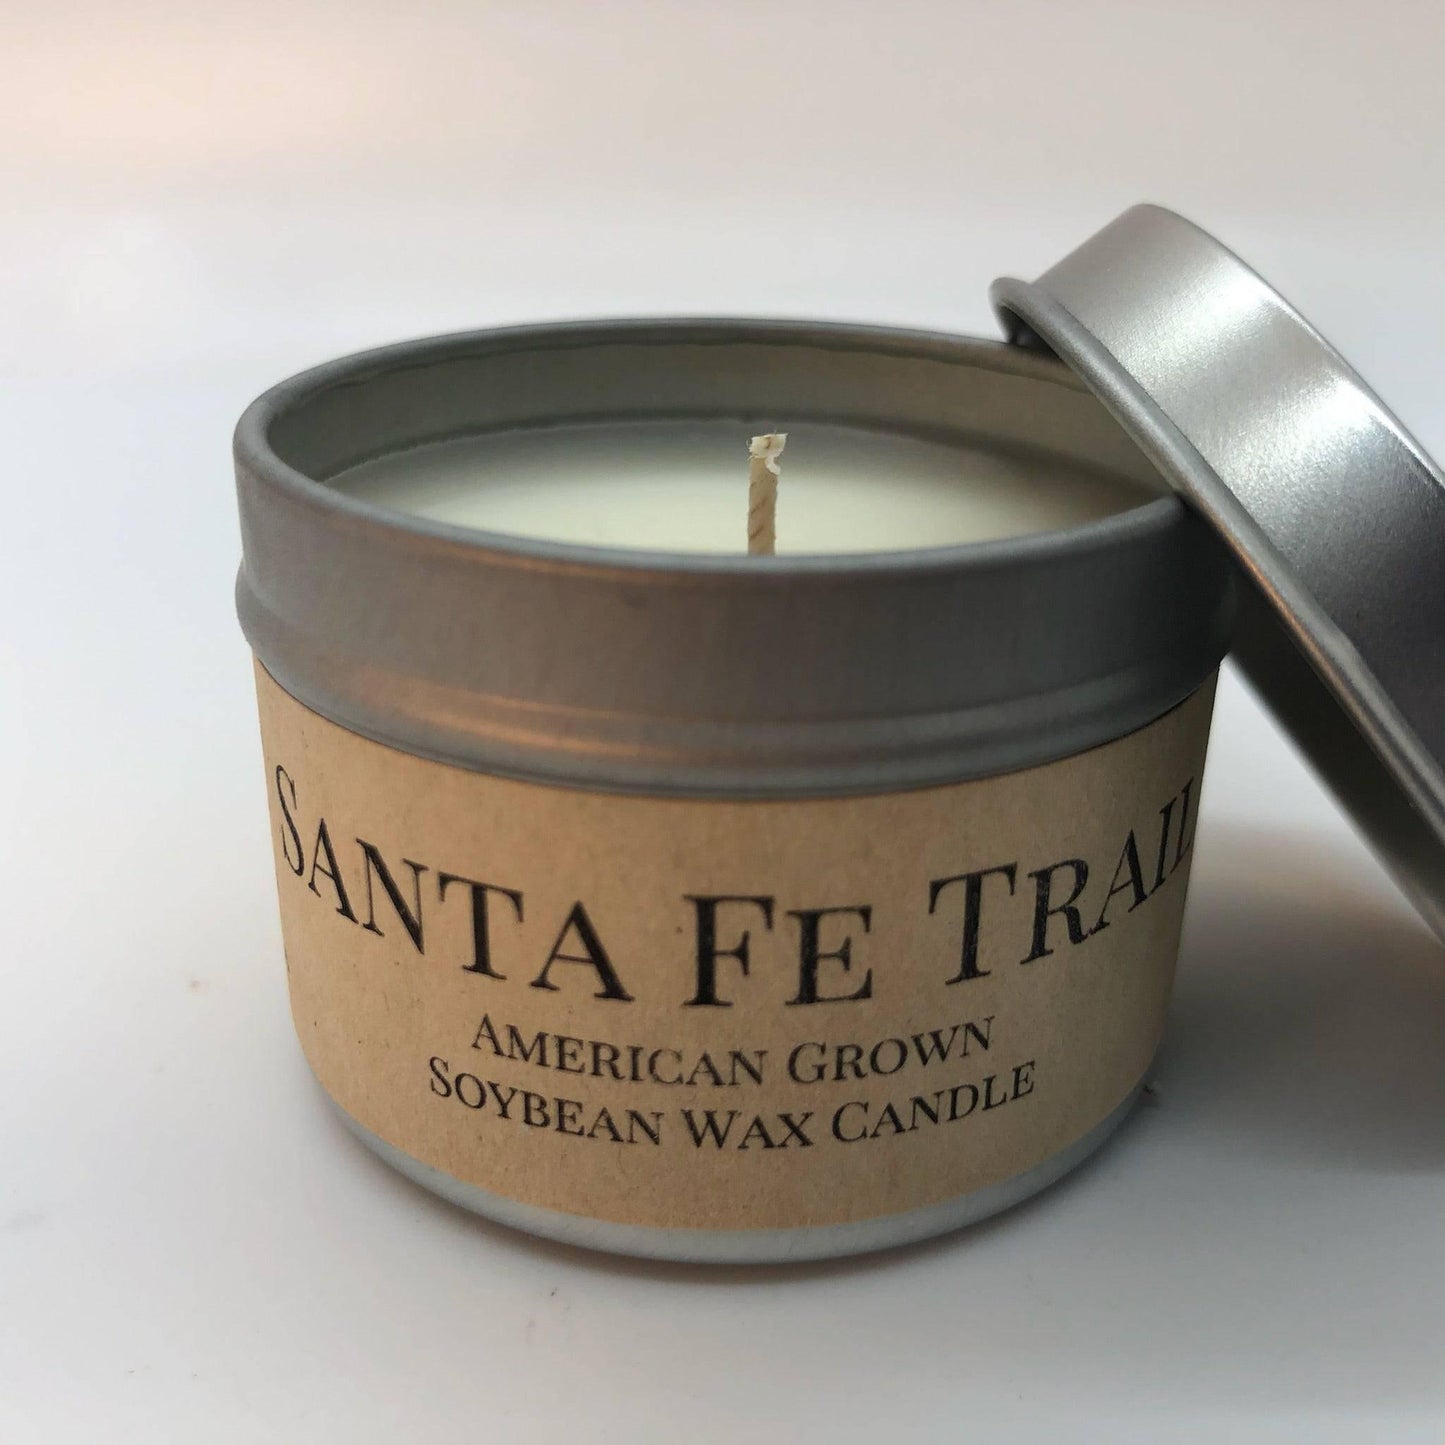 Santa Fe Trail Soy Wax Candle | 2 oz Travel Tin - Prairie Fire Candles